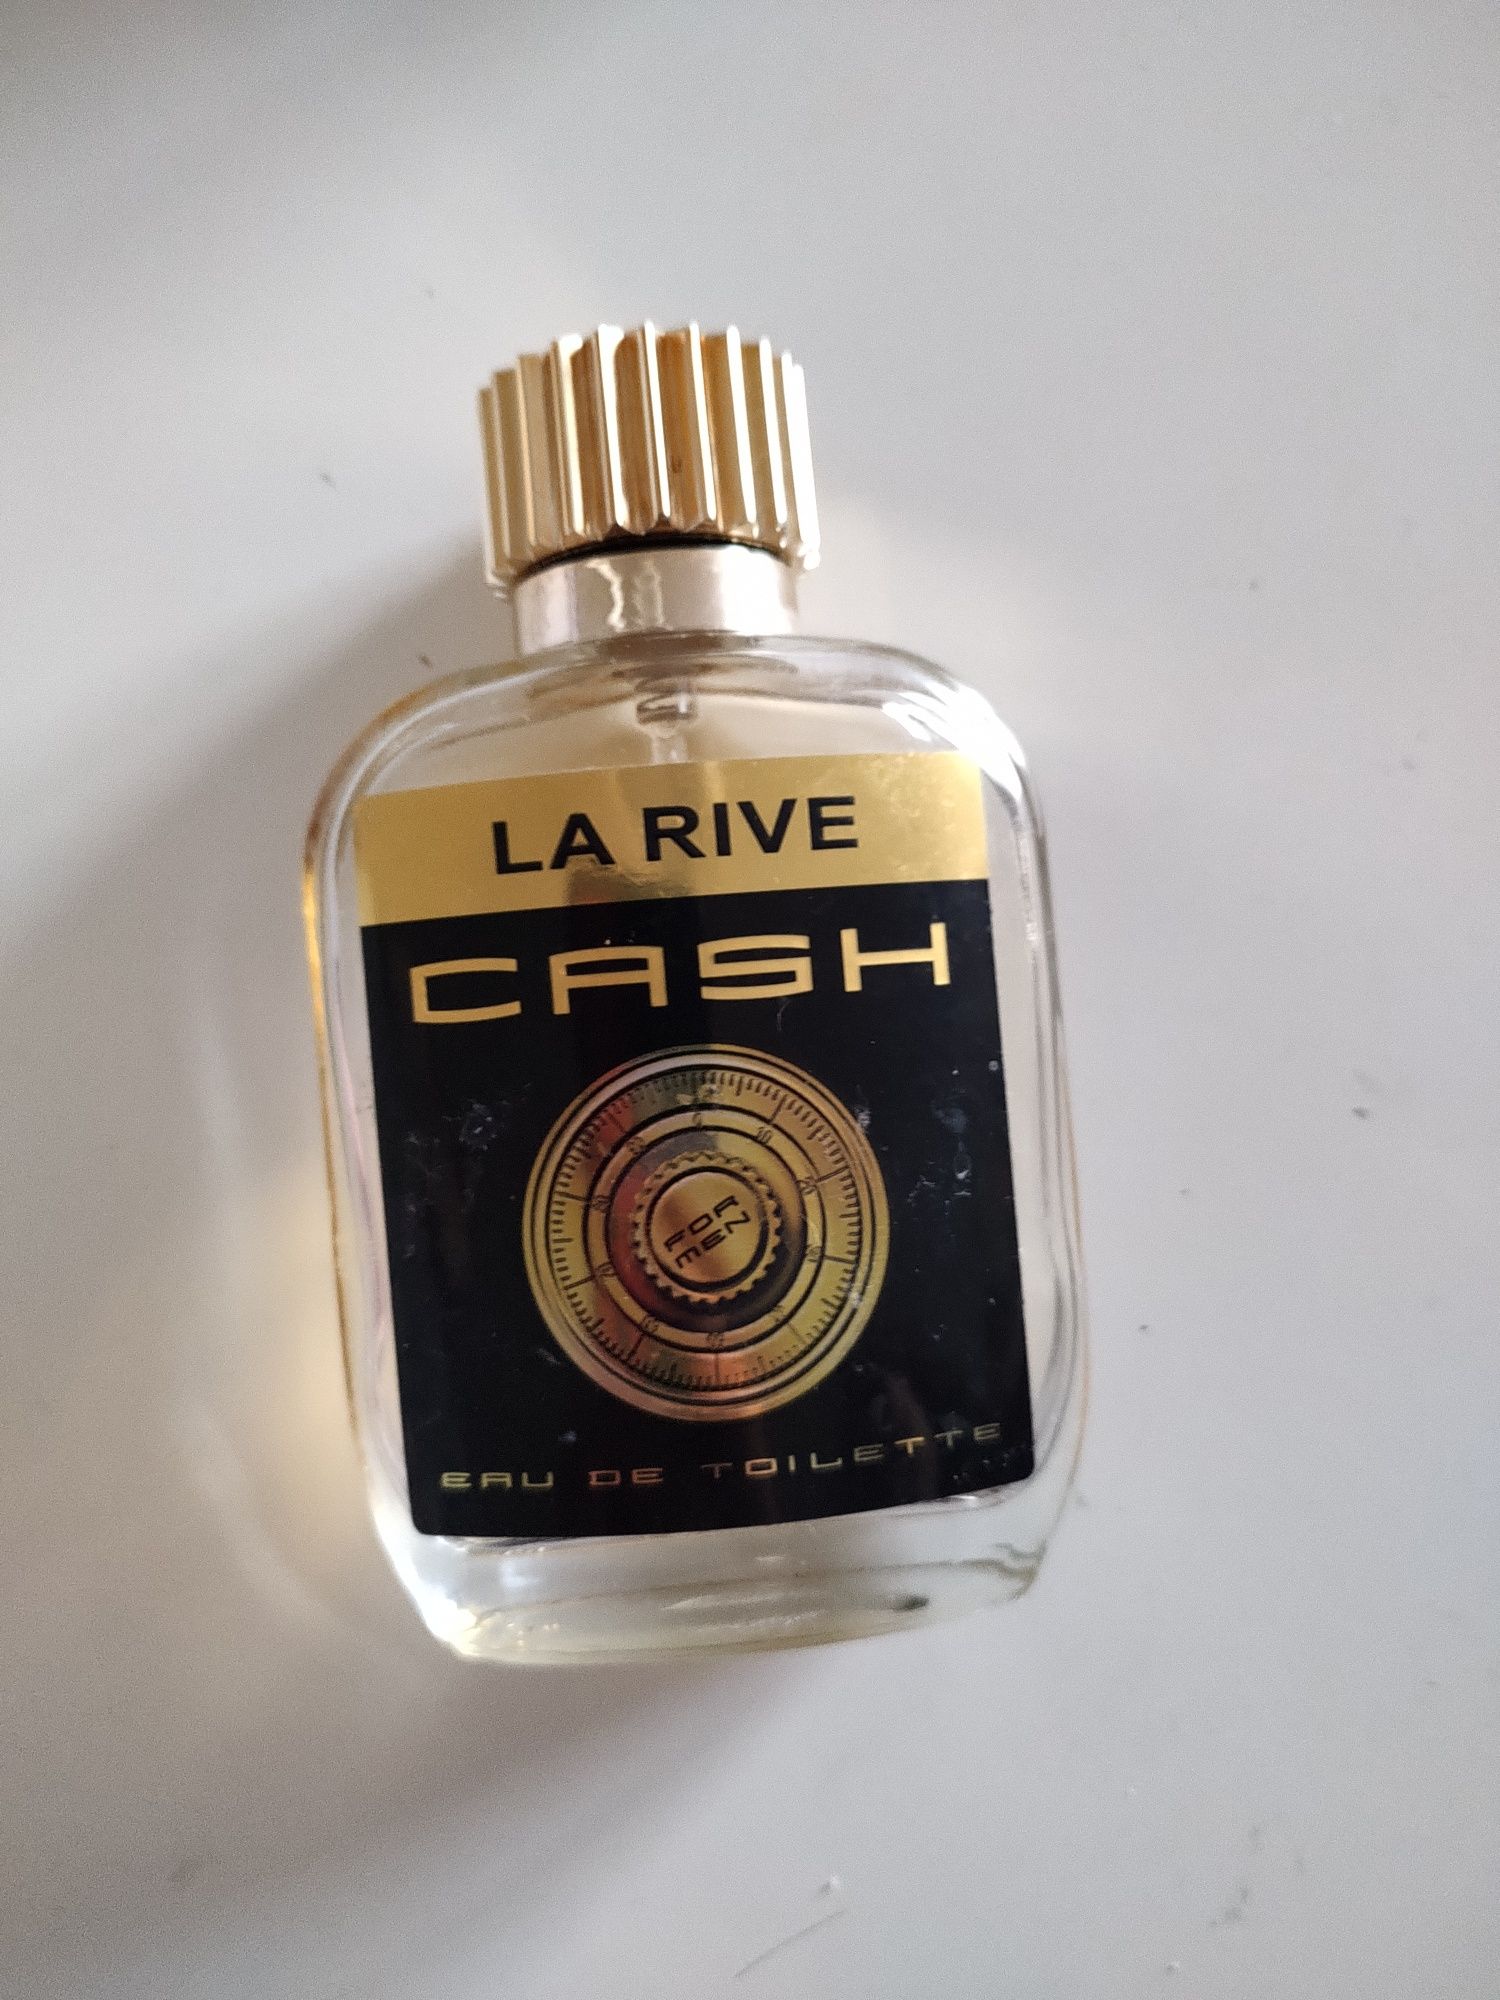 La Rive Cash Woda toaletowa dla mężczyzn po goleniu 

Połowa butelki.